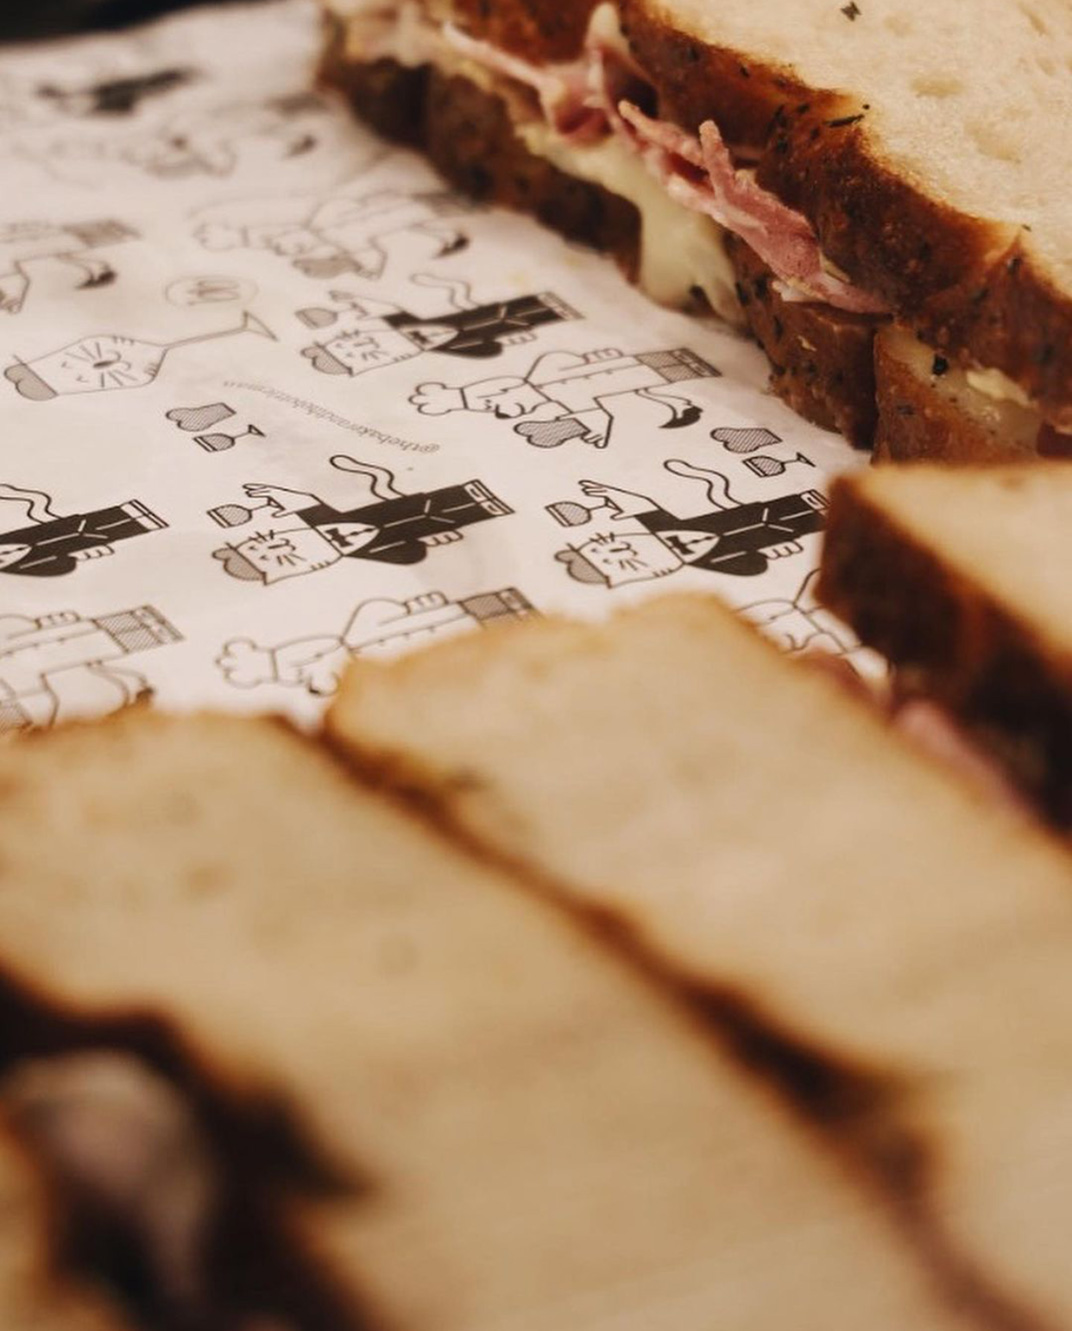 手绘插画风格英式传统面包店 英国 上海 面包店 手绘 插画 不干胶 蓝色 包装设计 logo设计 vi设计 空间设计